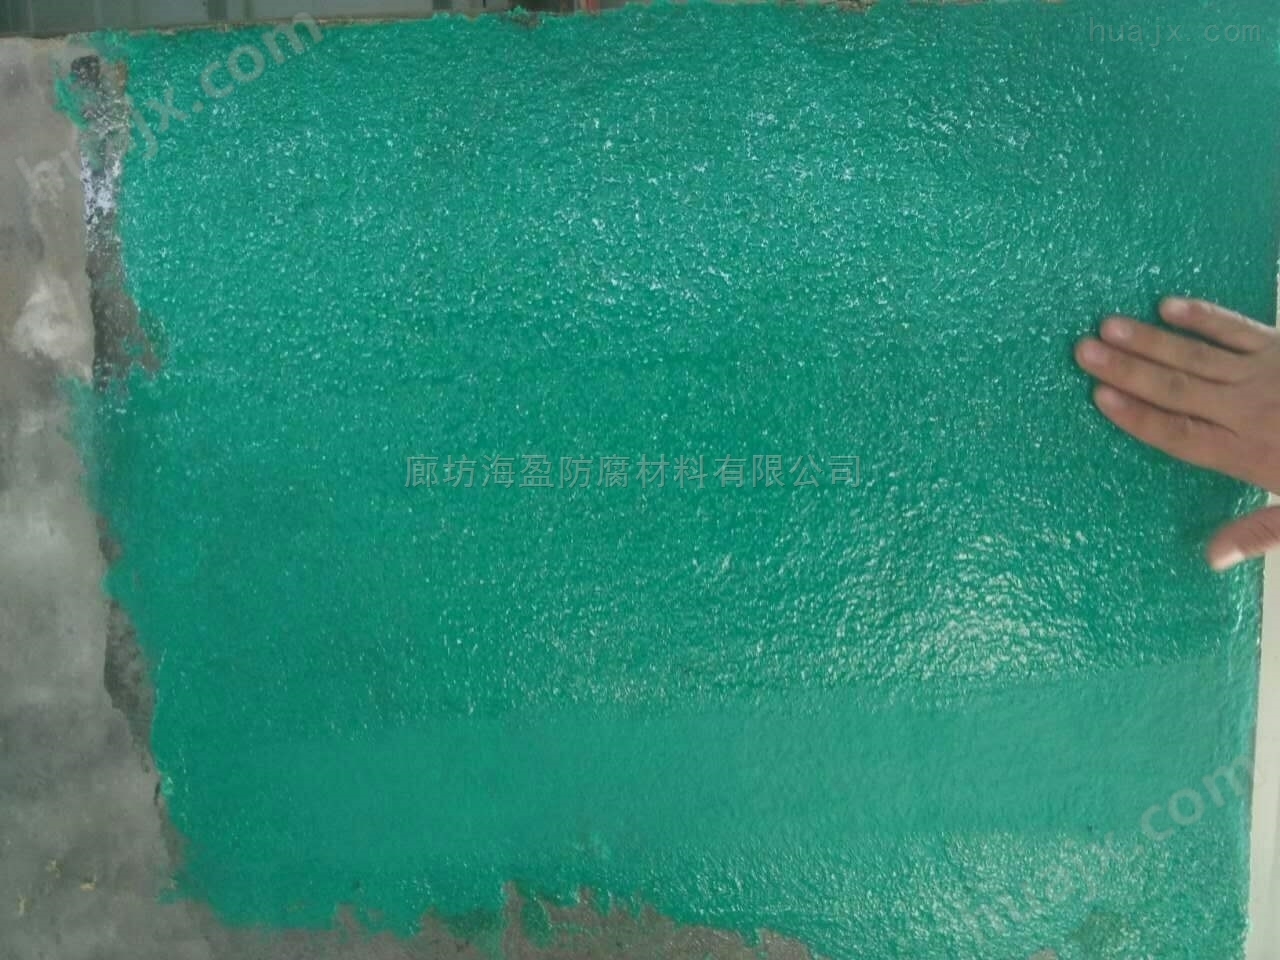 广西桂林市树脂玻璃鳞片涂料生产厂家